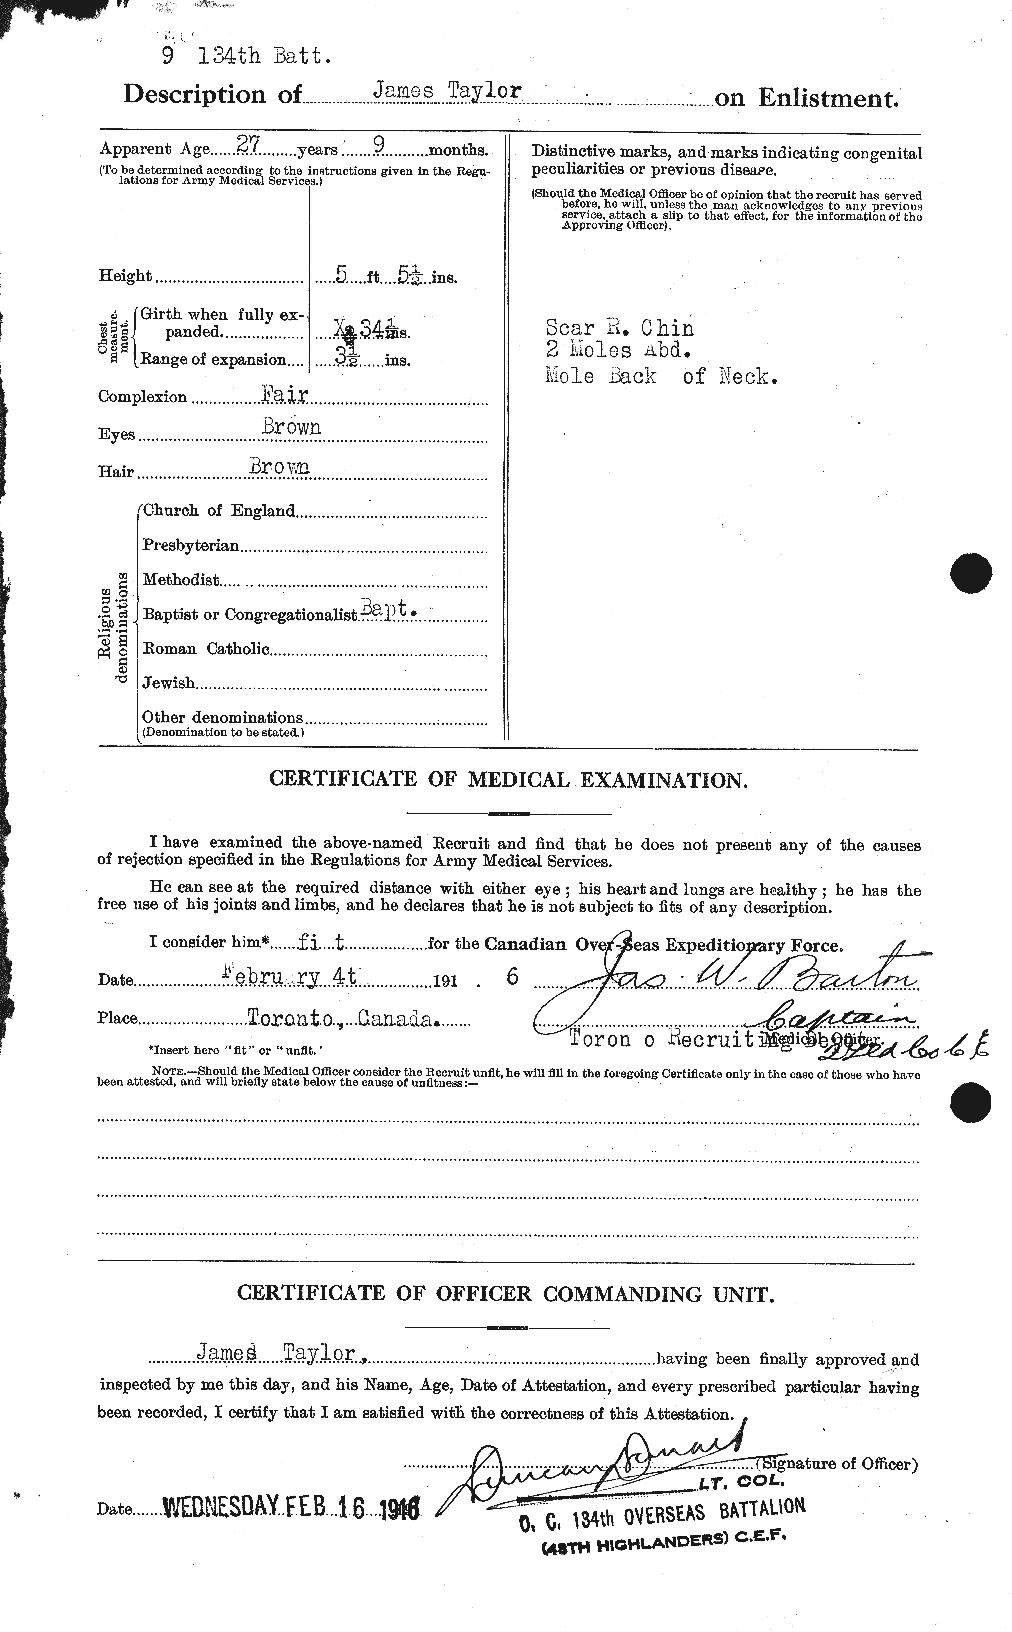 Dossiers du Personnel de la Première Guerre mondiale - CEC 626651b